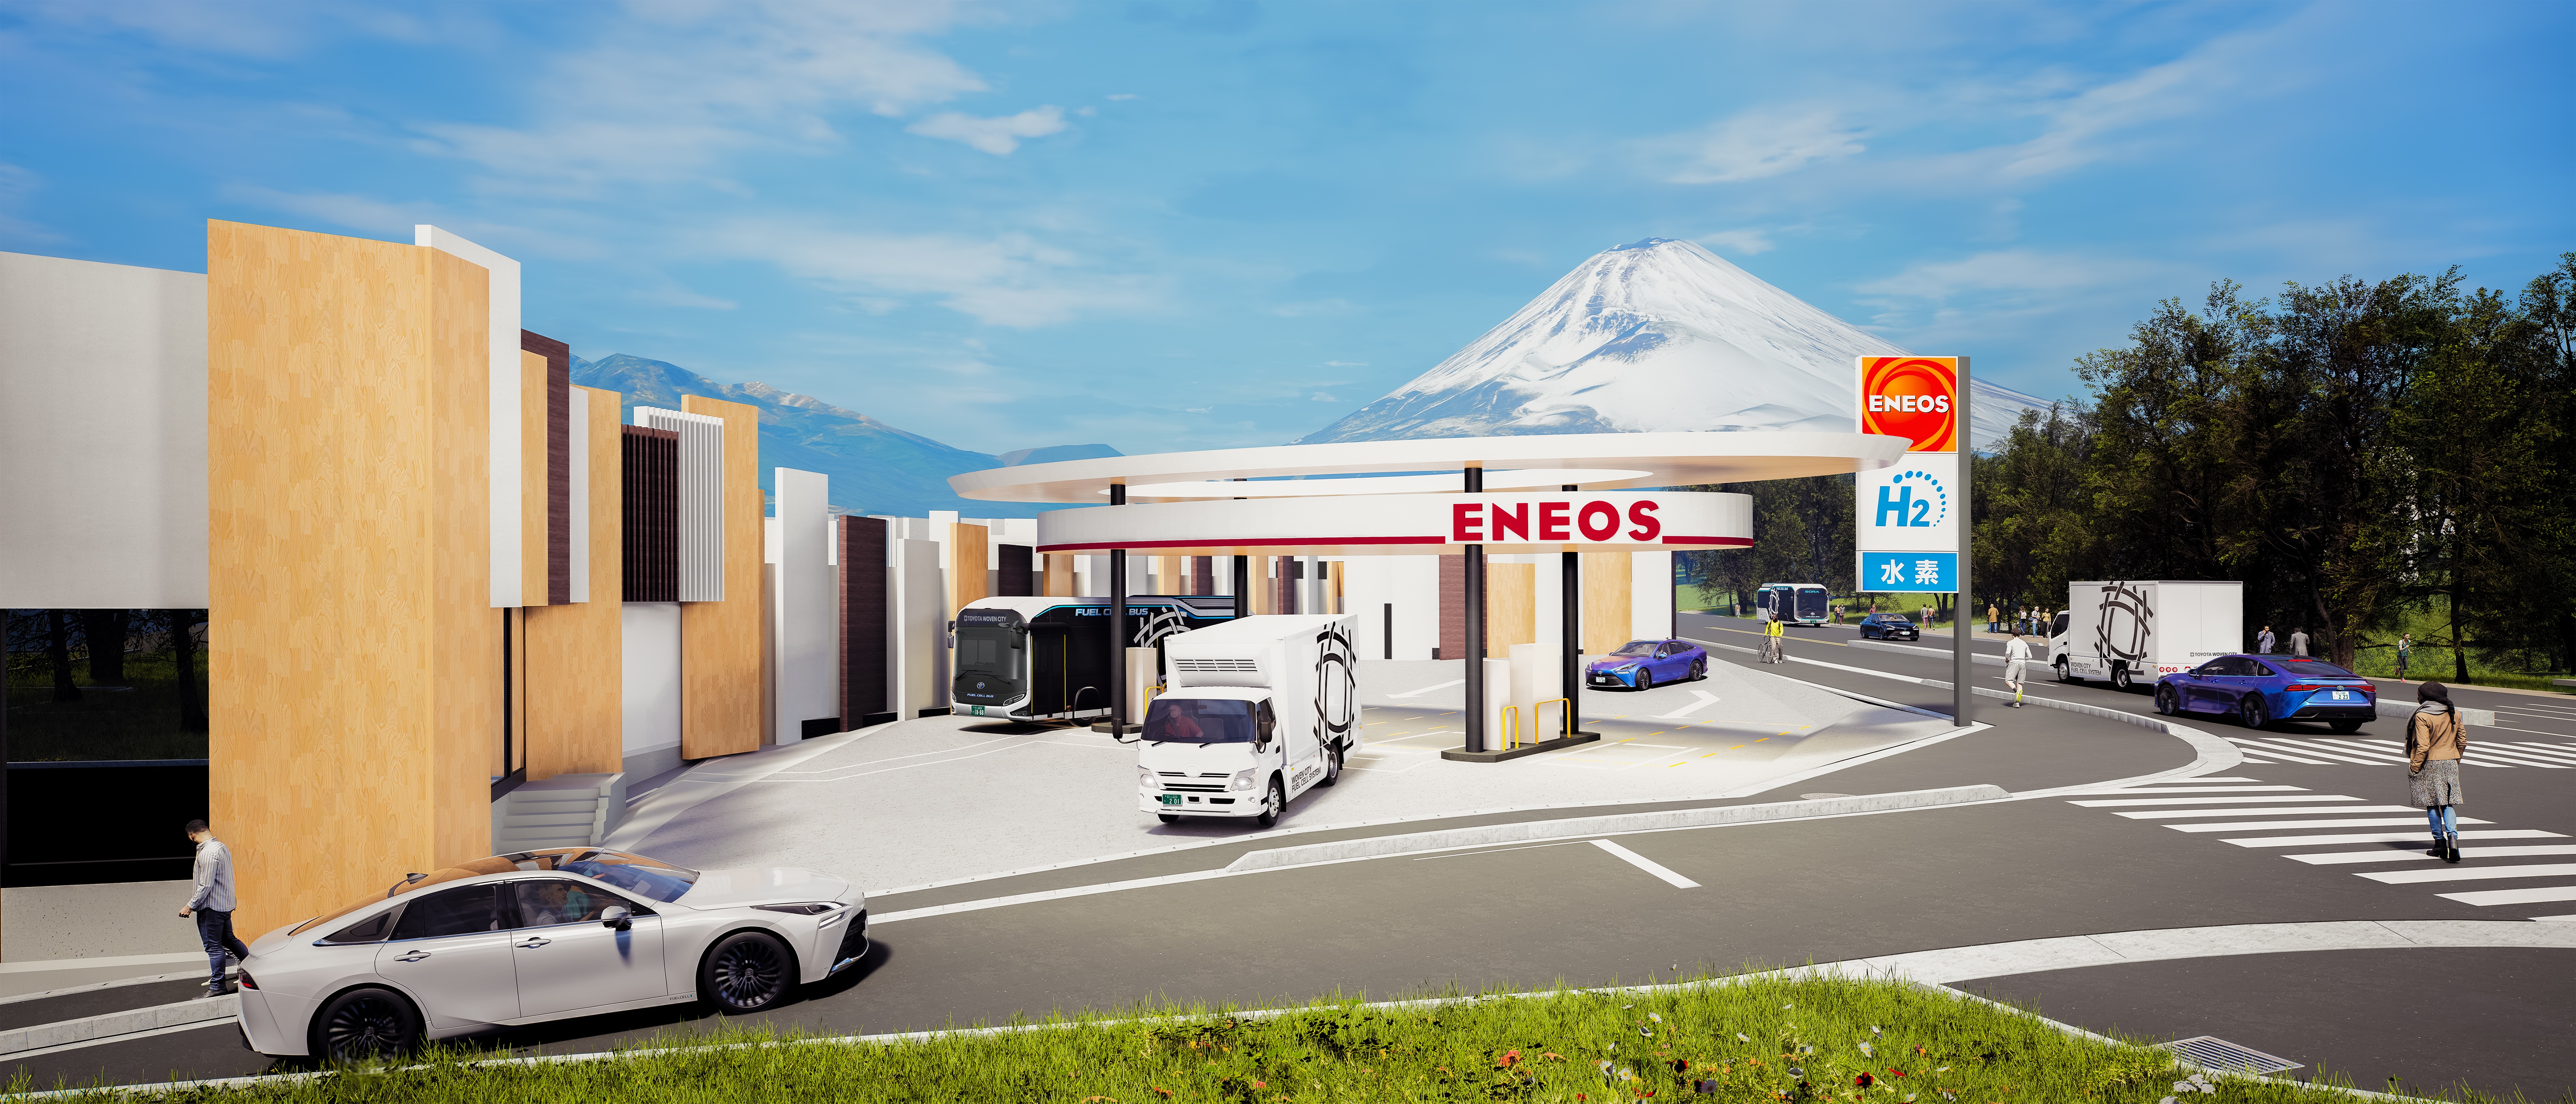 3D render of an Eneos hydrogen station near Mt. Fuji